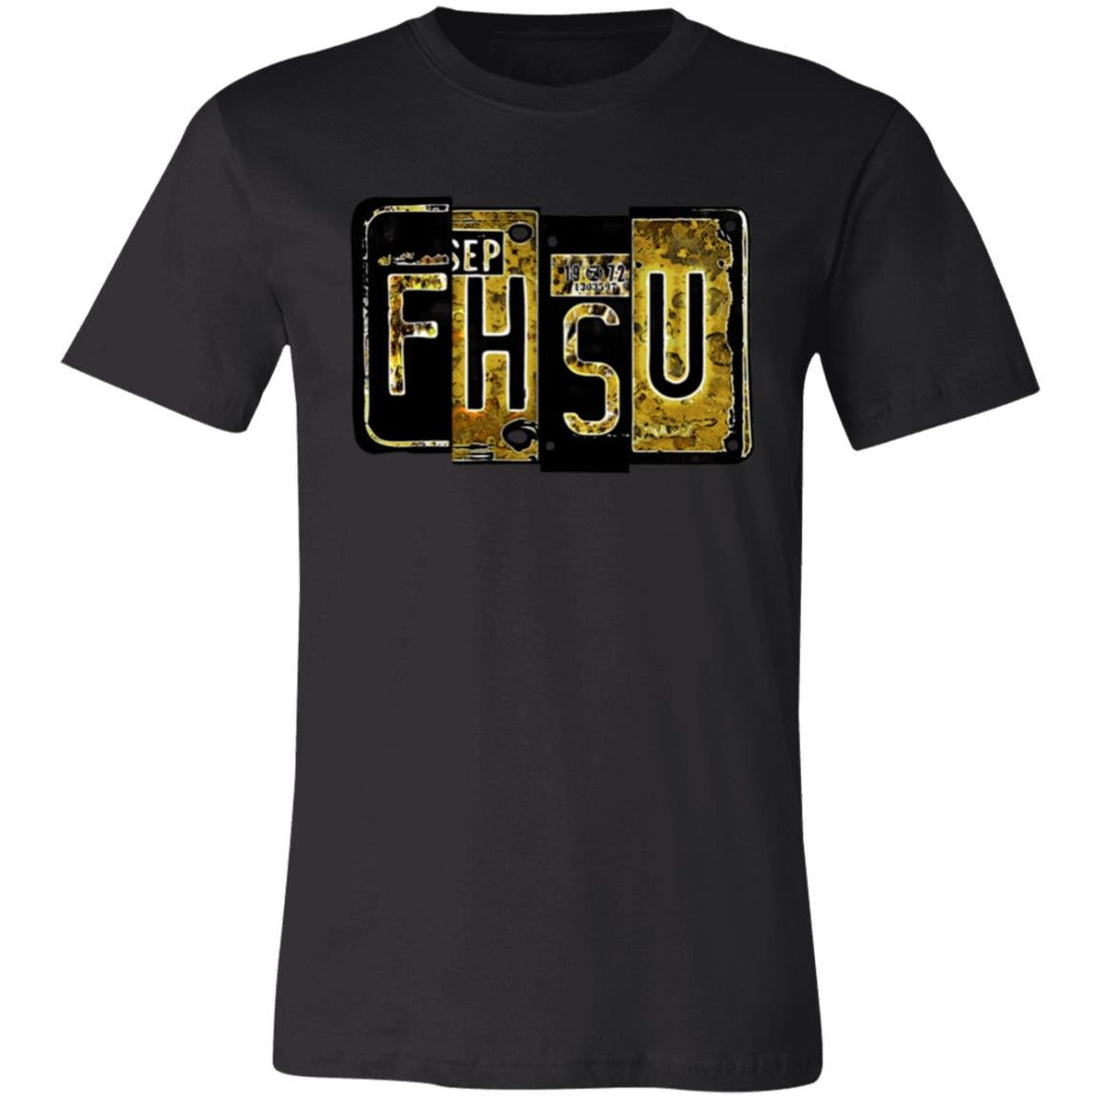 FHSU Plates Short-Sleeve T-Shirt - T-Shirts - Positively Sassy - FHSU Plates Short-Sleeve T-Shirt